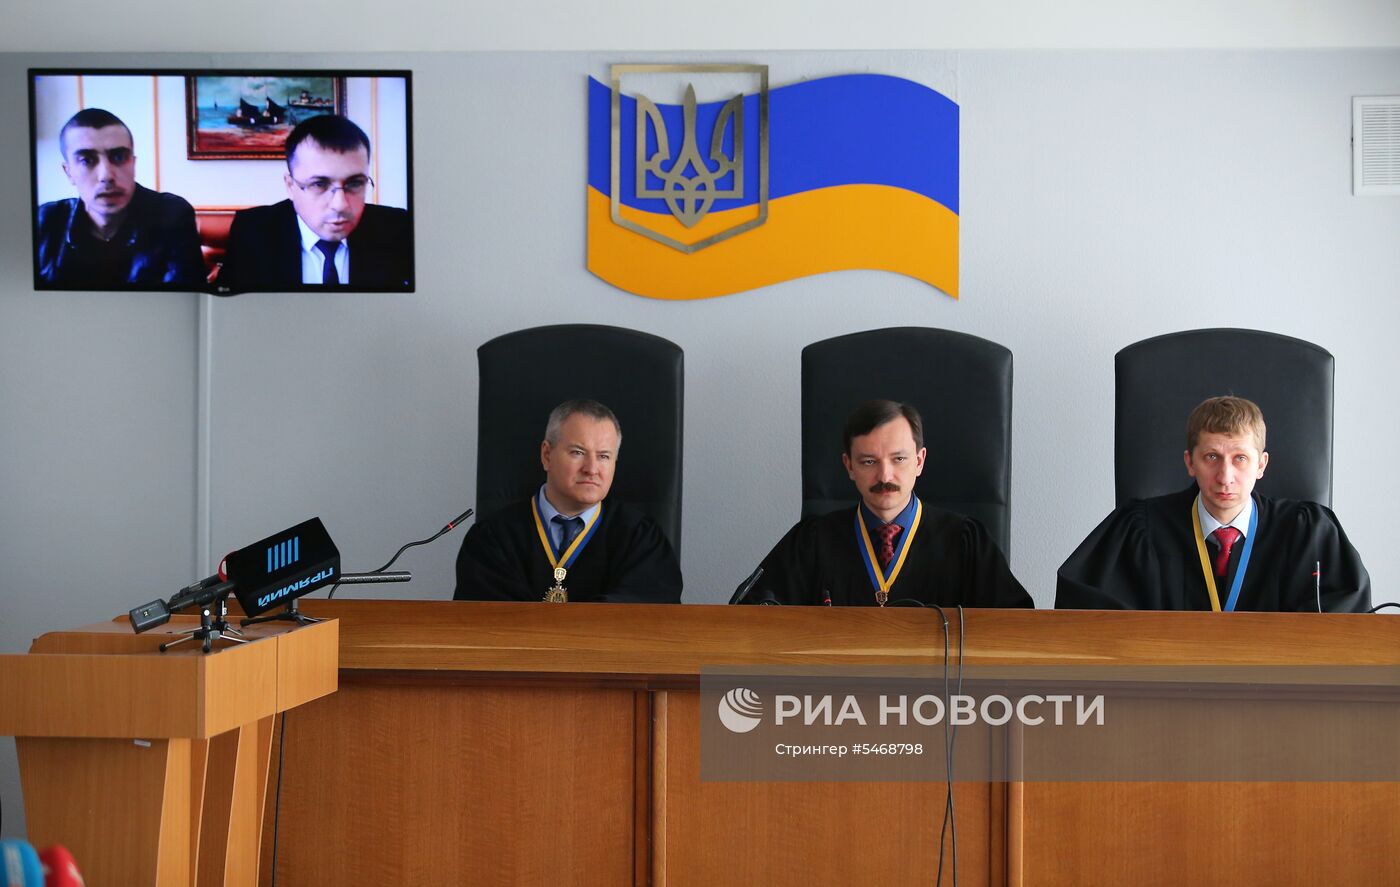 Суд над В. Януковичем в Киеве